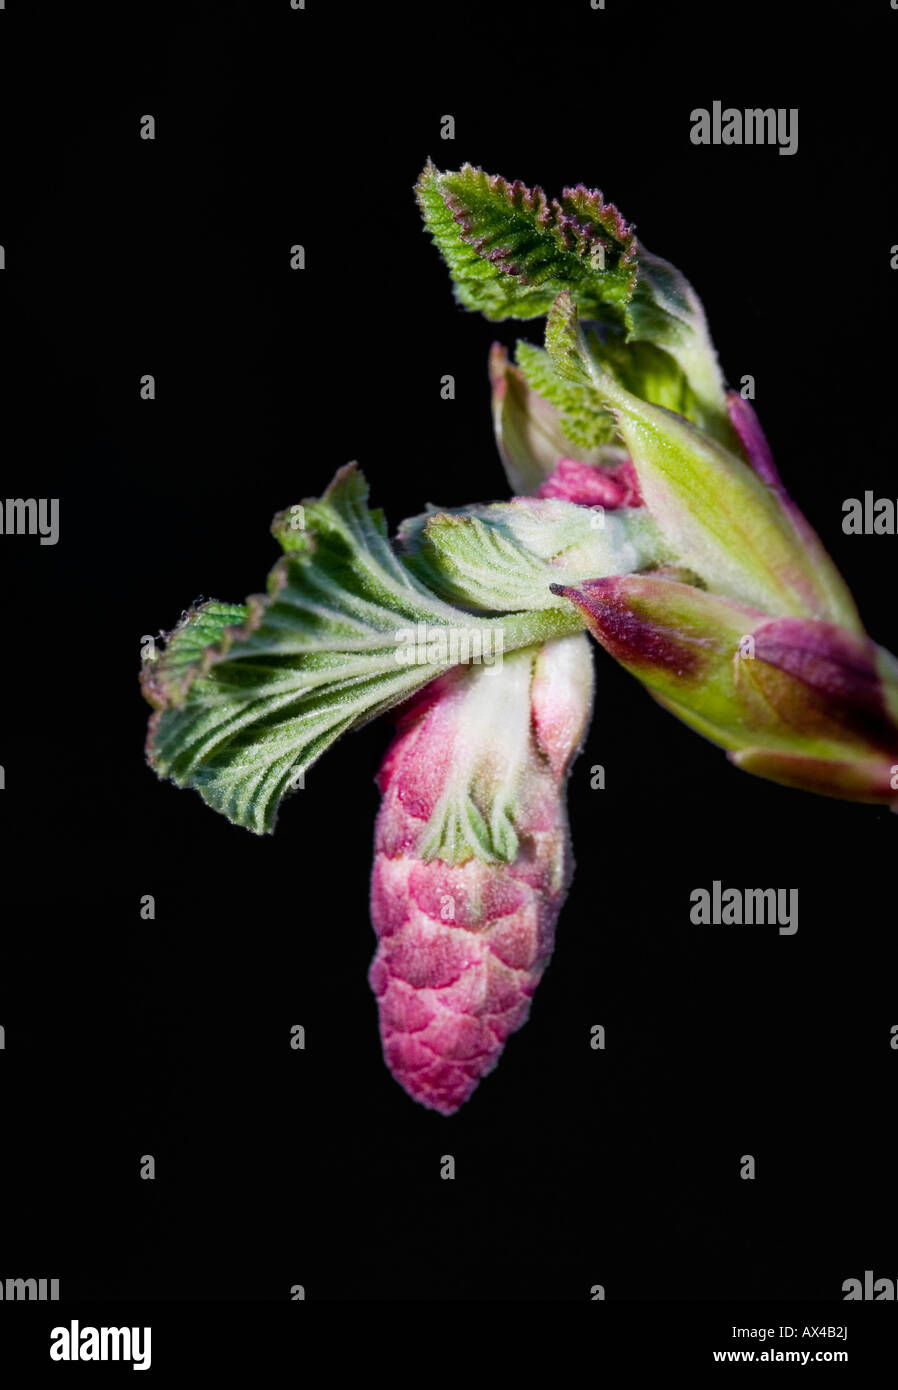 Flowering currant Latin name: Ribes Sanguinium Stock Photo